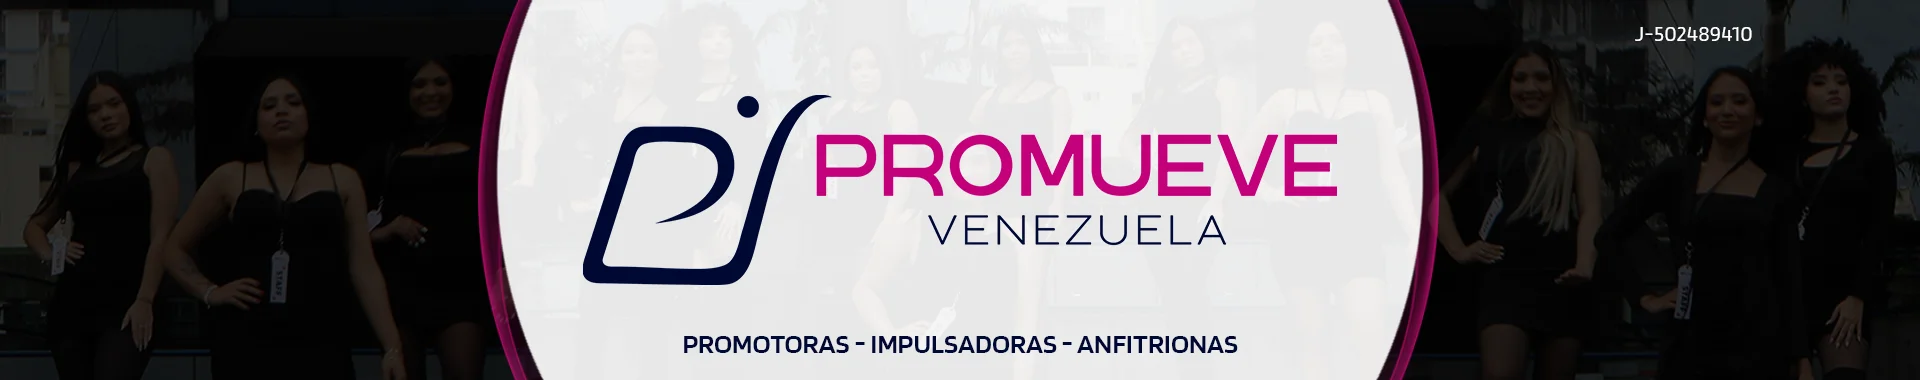 Imagen 2 del perfil de Promueve Venezuela